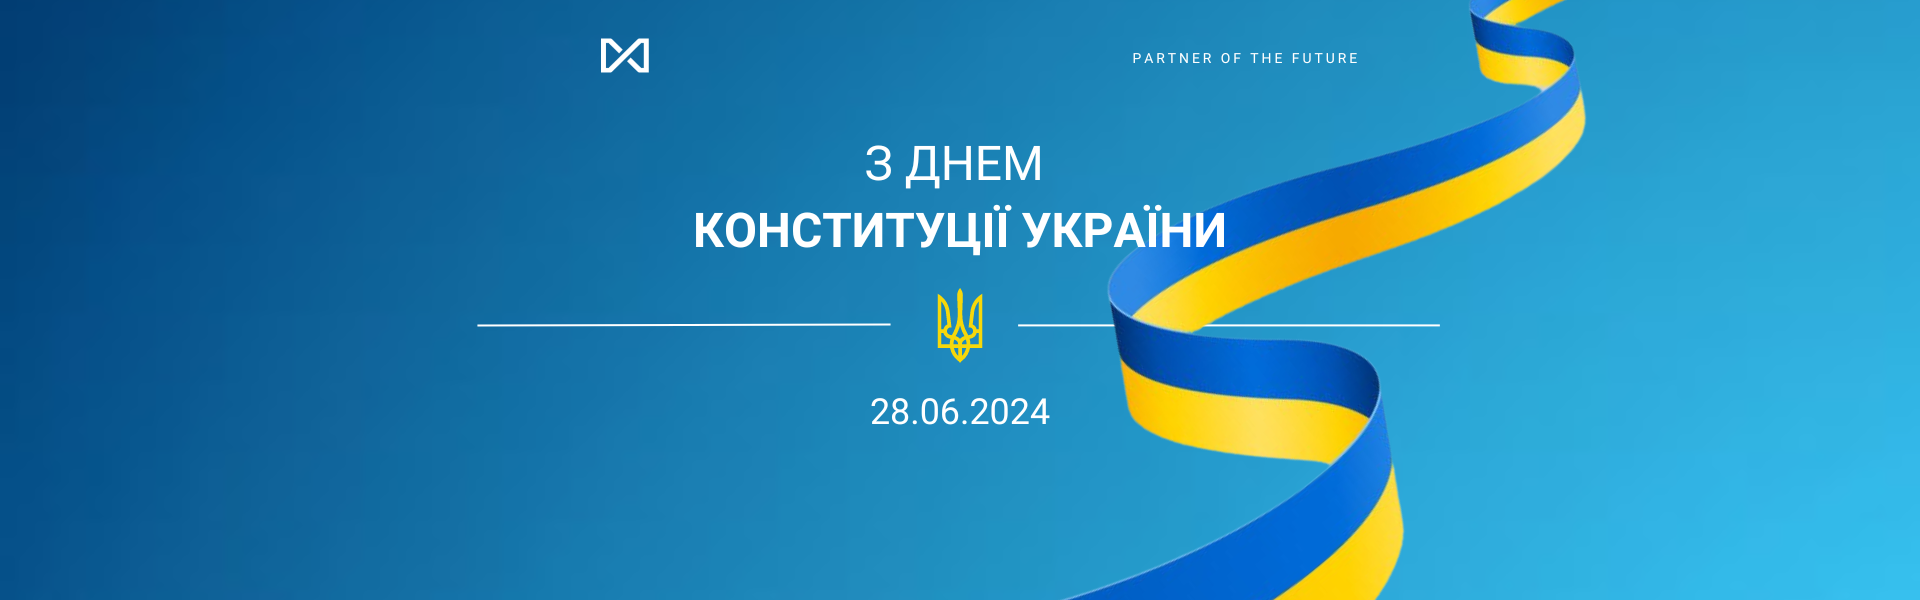 Команда EVERLEGAL щиро вітає вас з Днем Конституції України